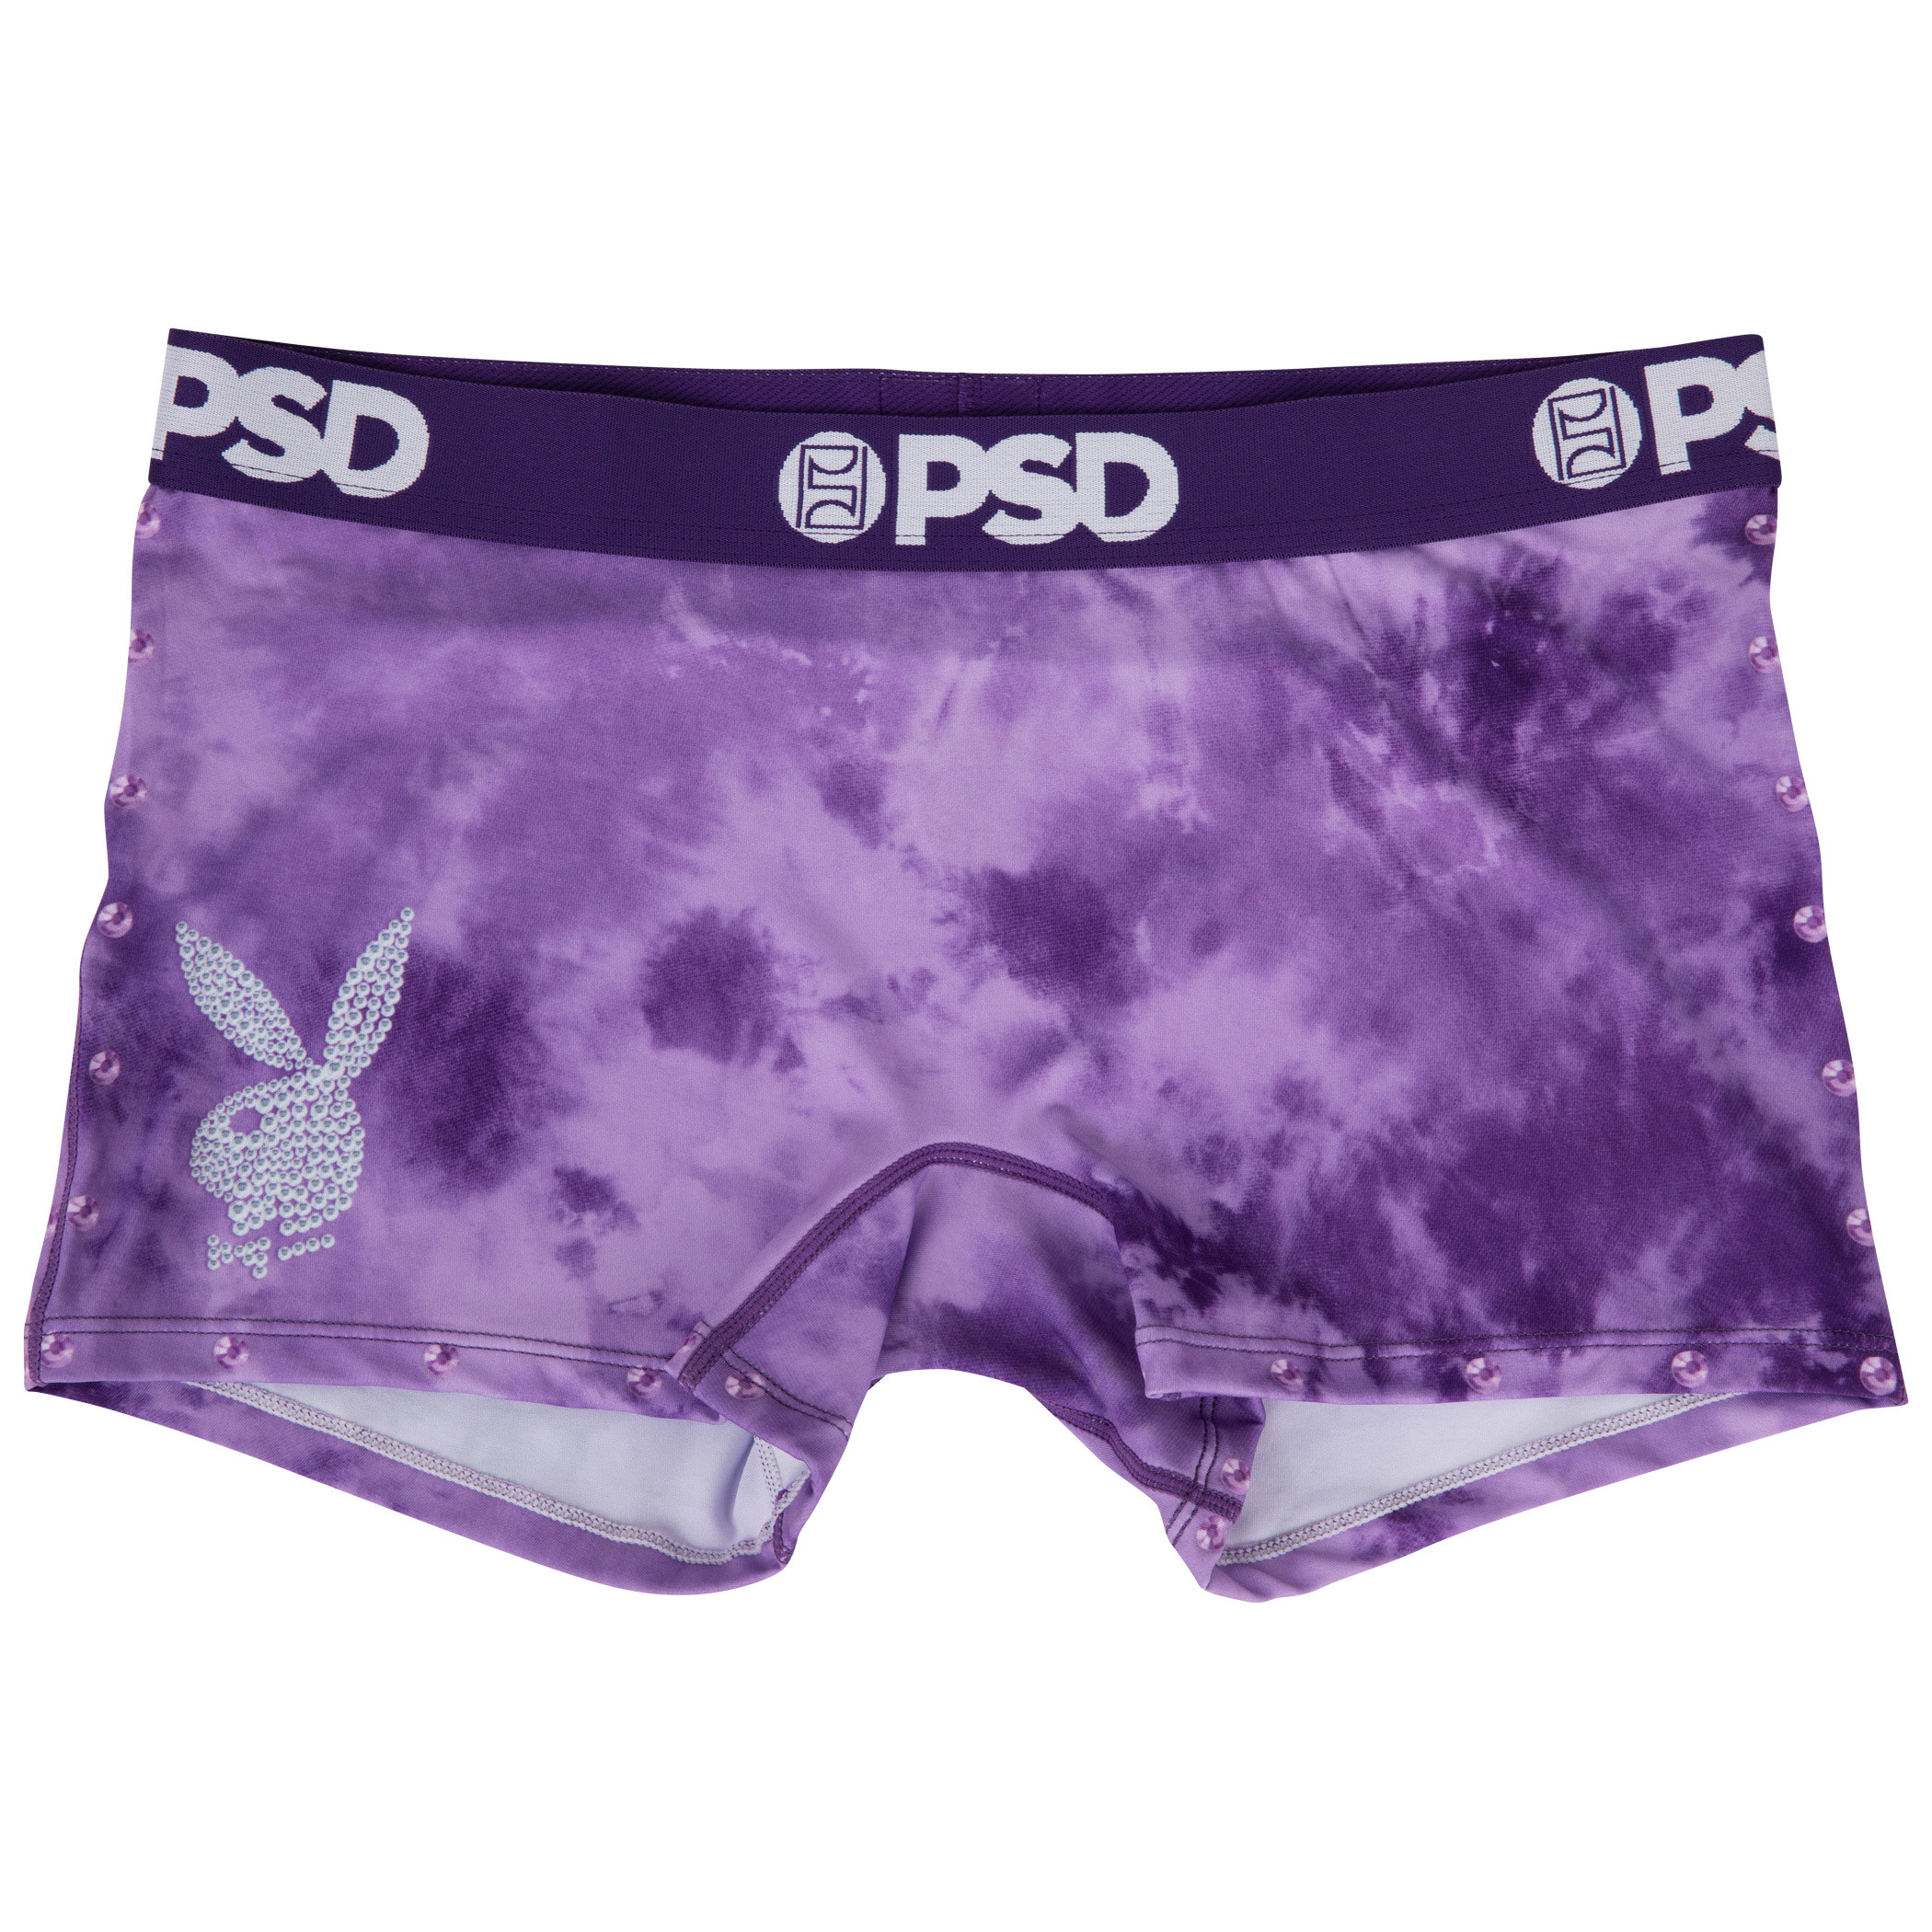 Playboy Bunny Y2K Purple PSD Boy Shorts Underwear